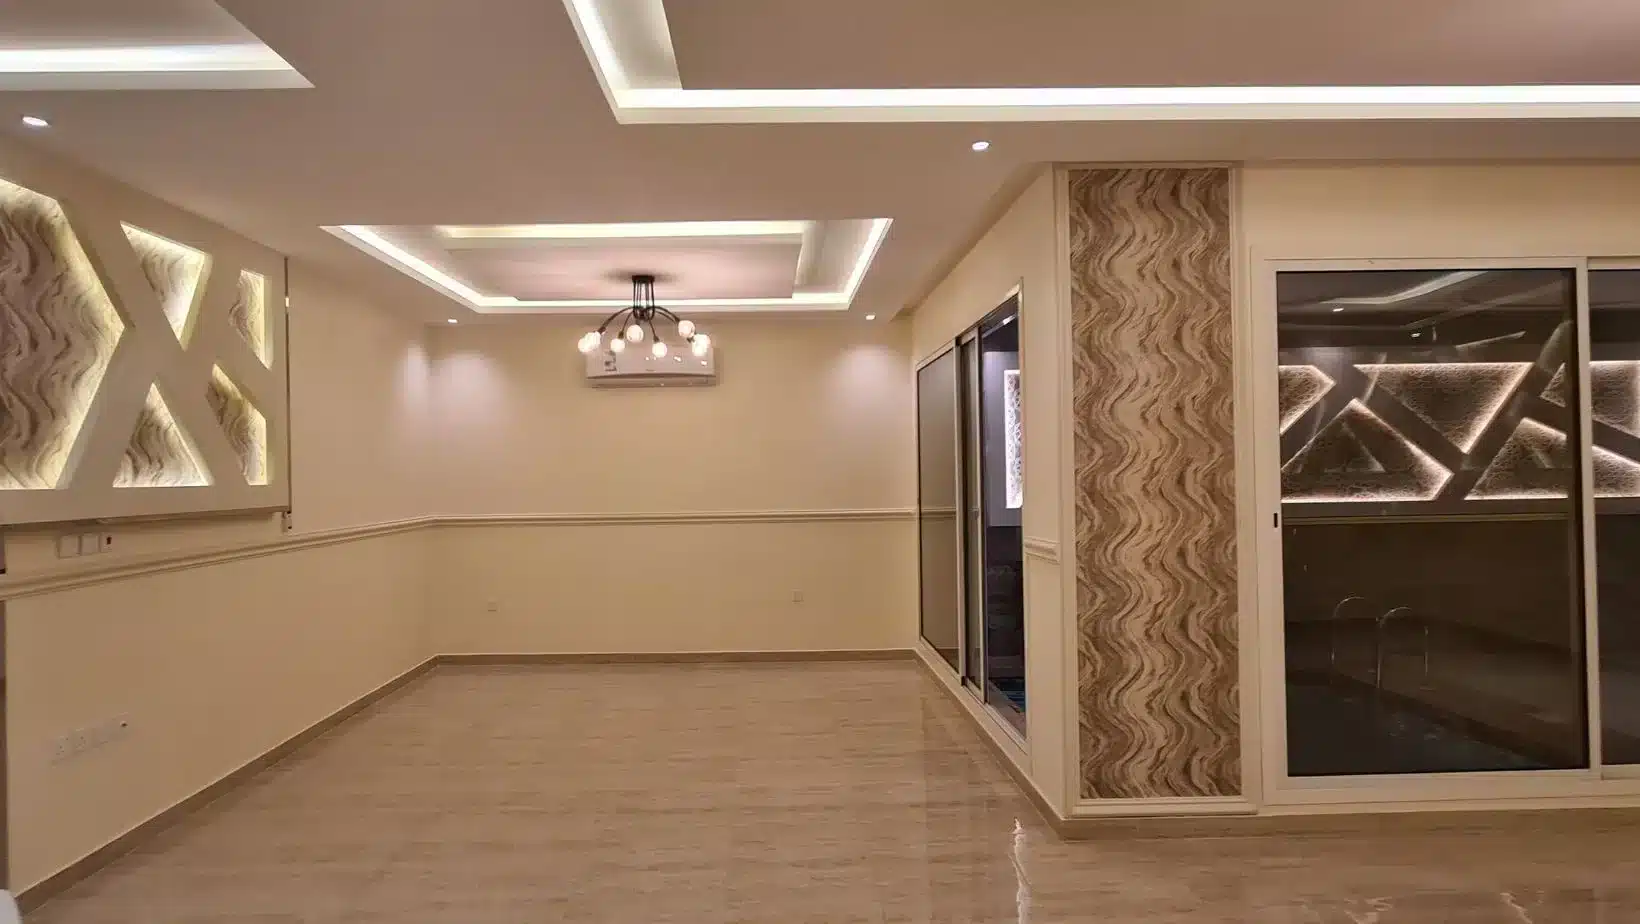 شقق الواحة بالسليمانية للإيجار بالرياض، Oasis apartments in Sulymaniah for rent in Riyadh